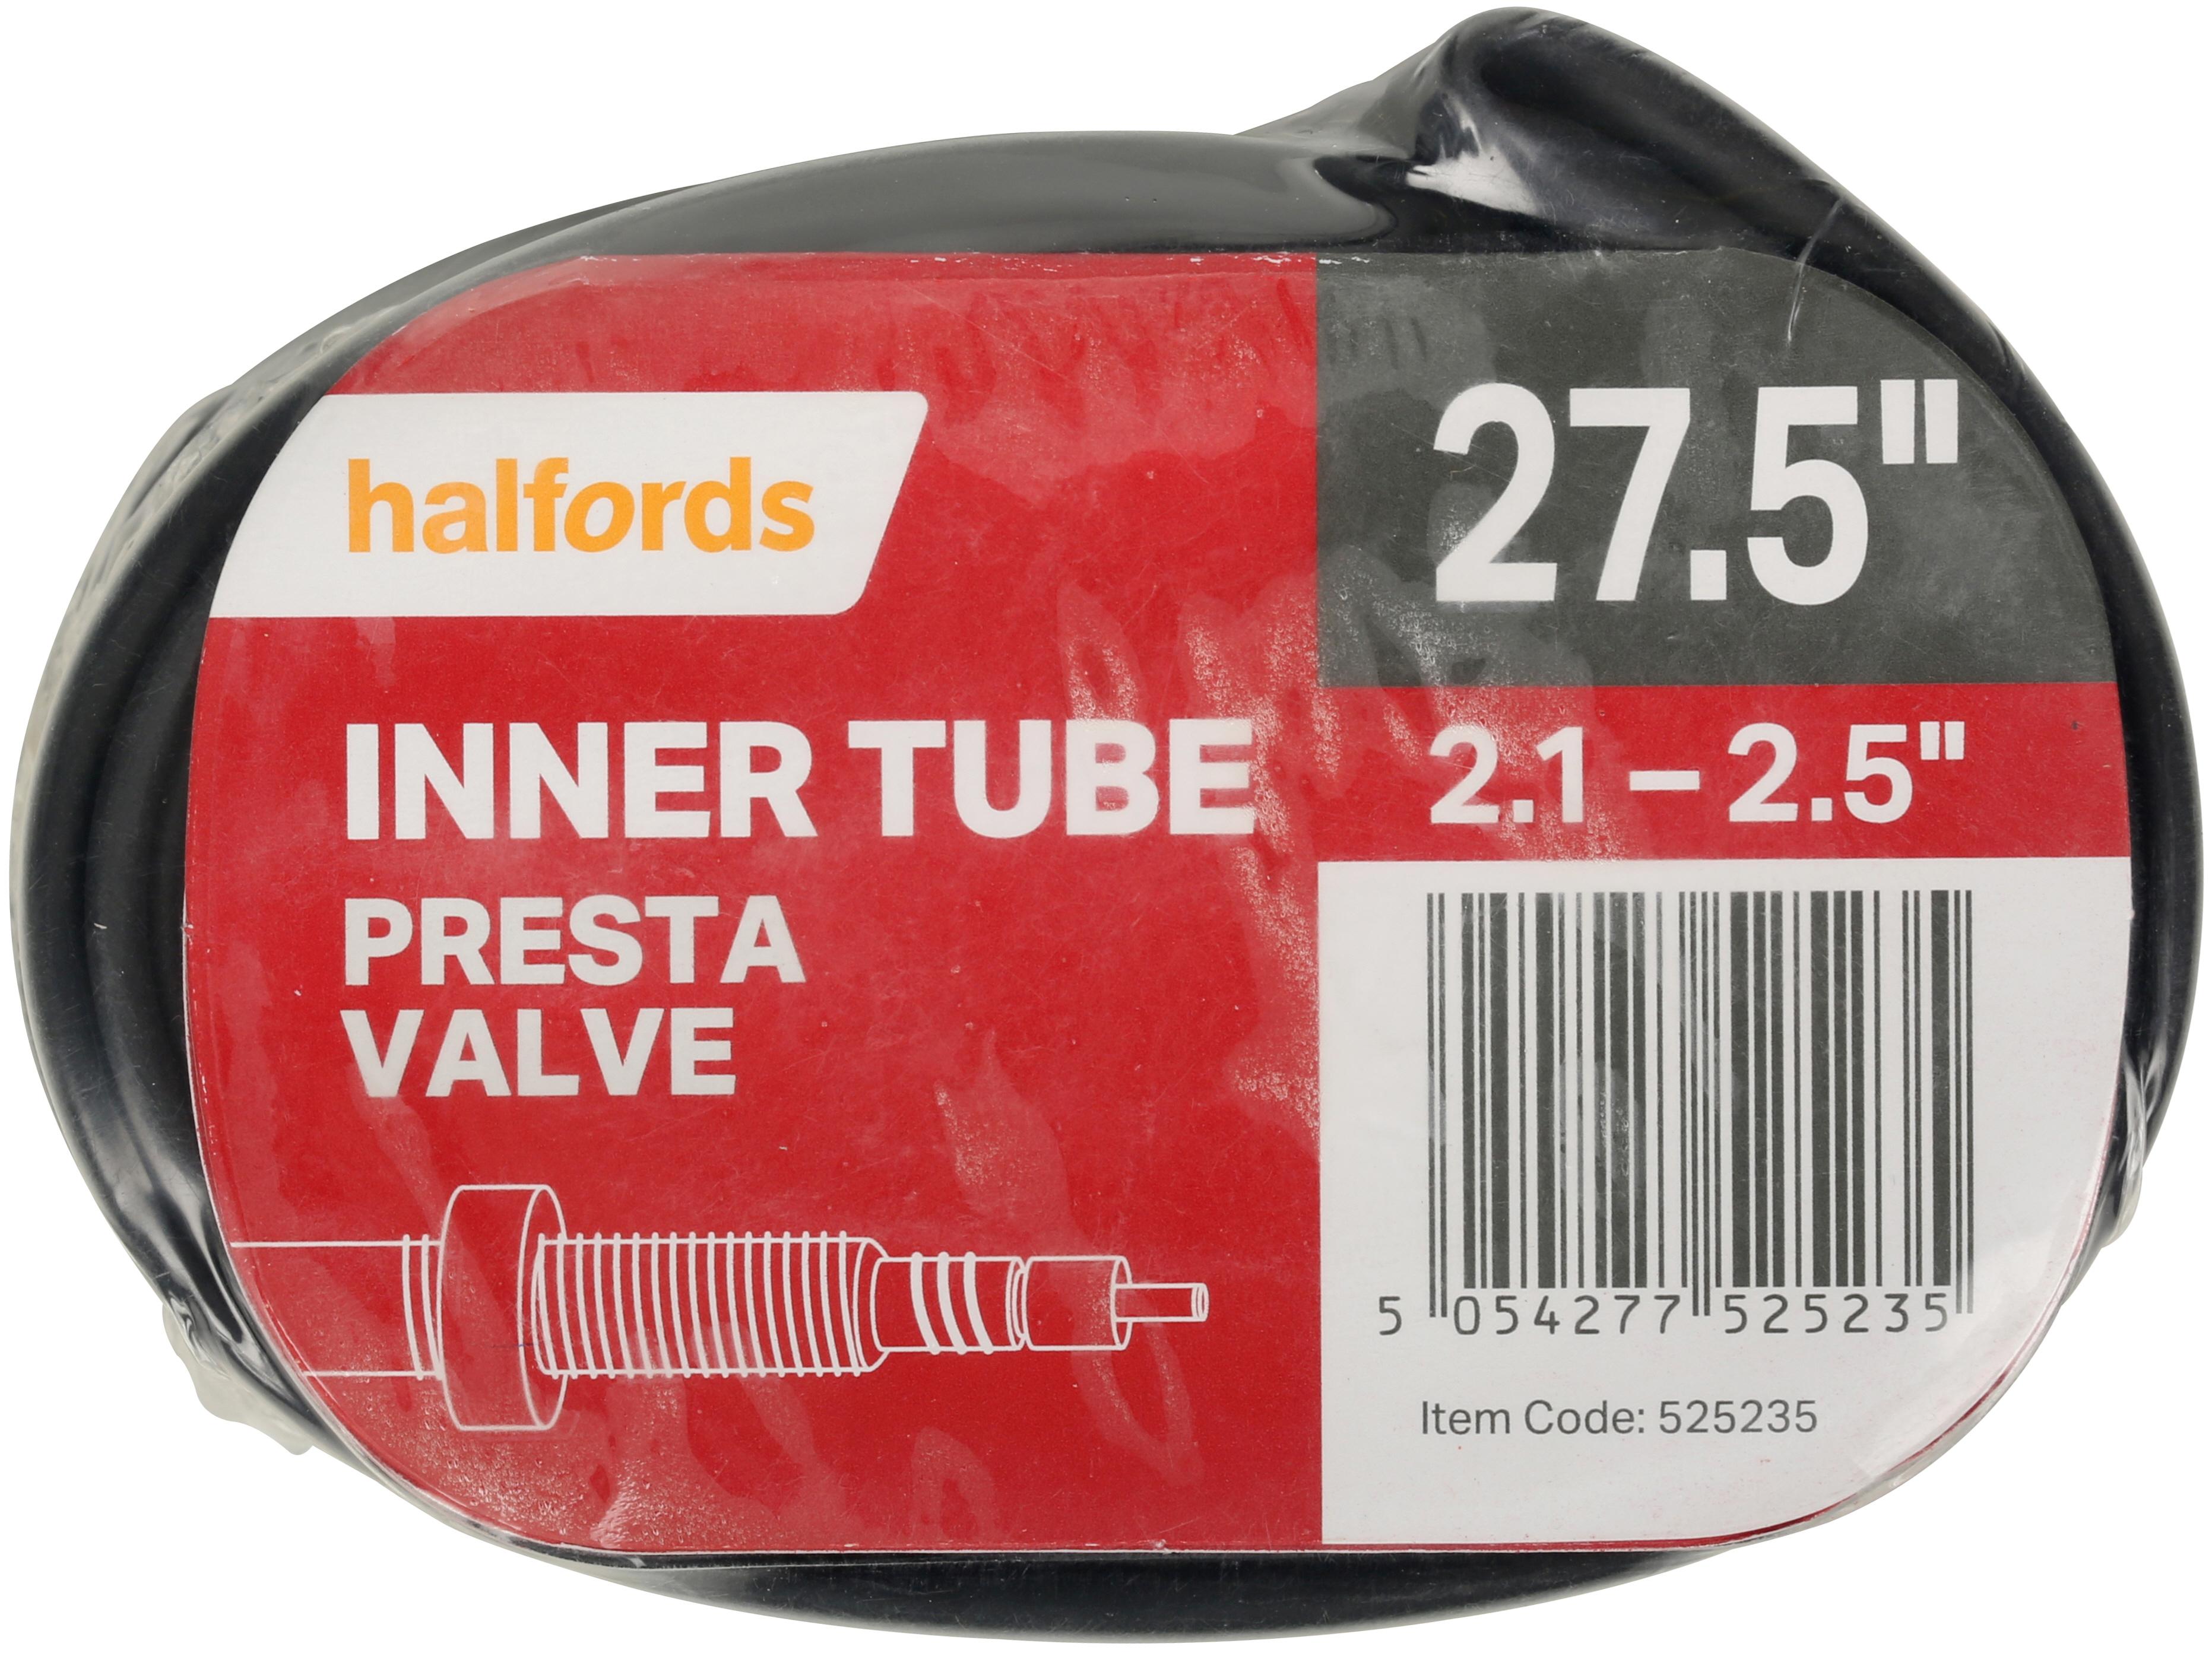 Halfords Bike Inner Tube, 27.5 Inch X 2.1 - 2.5 Inch, Presta